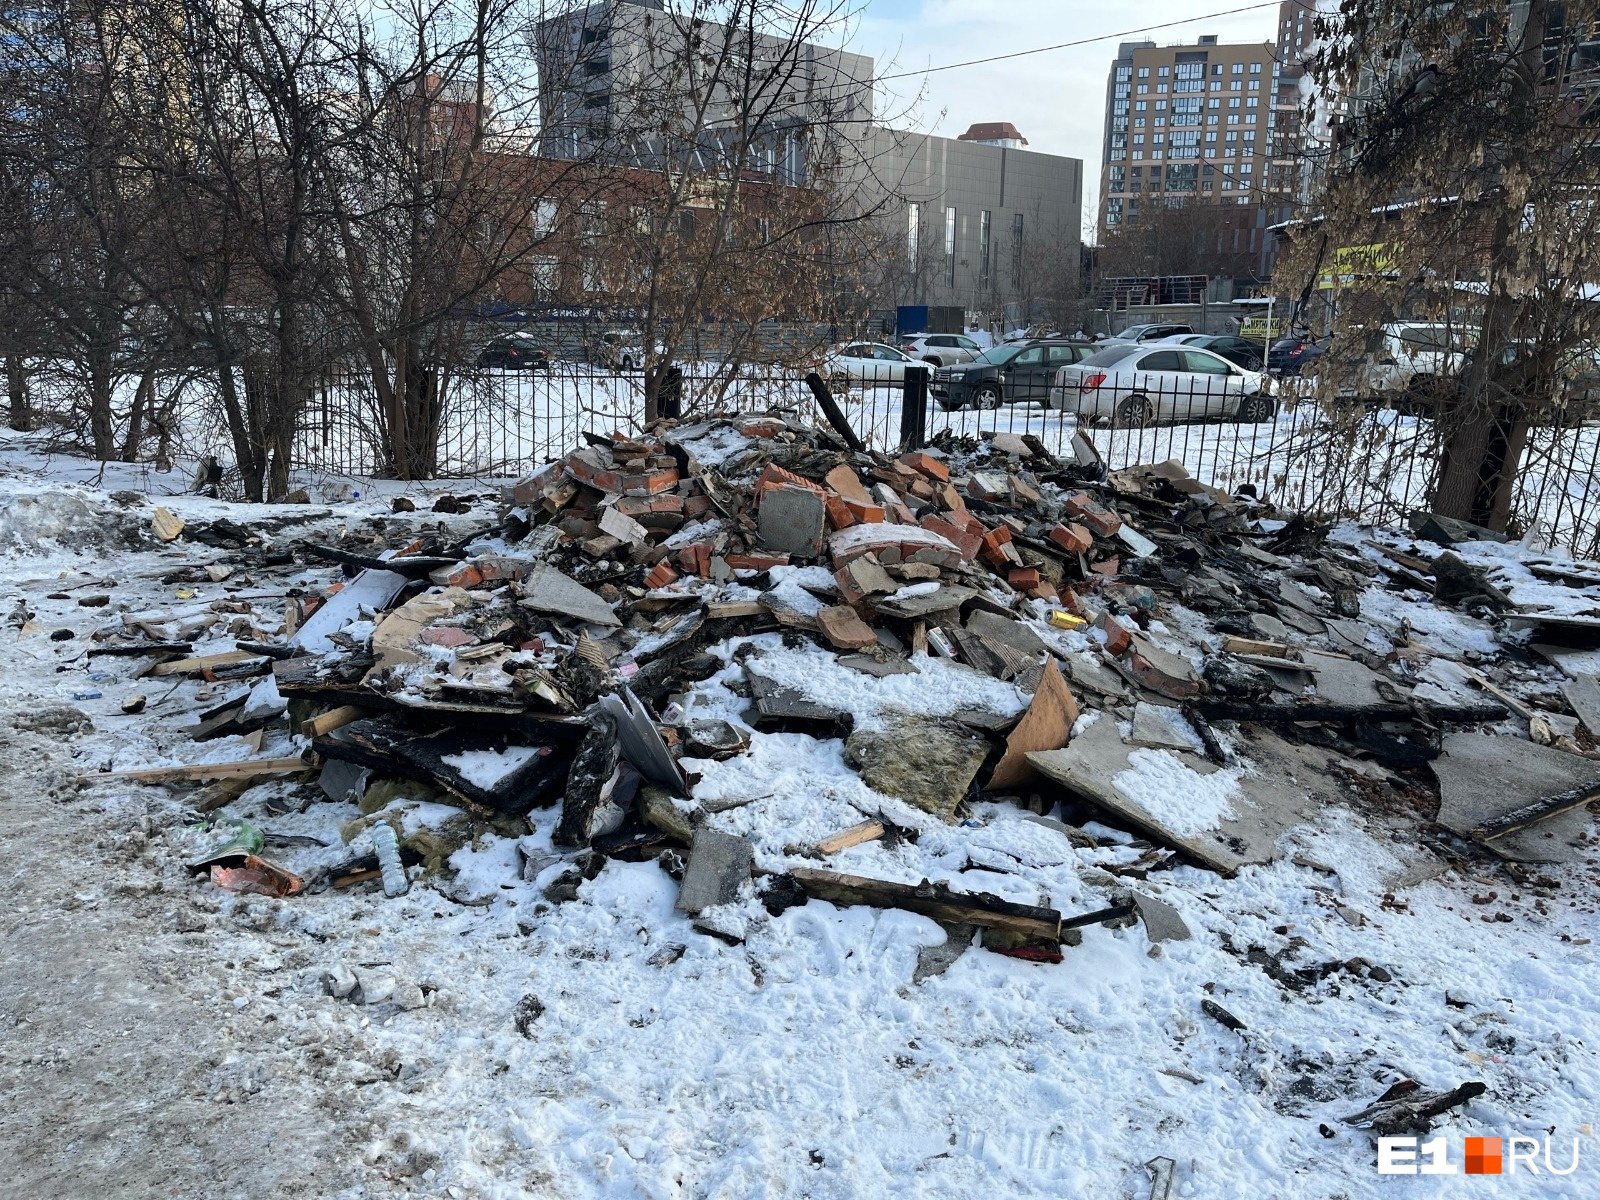 Максимум через три месяца: в мэрии Екатеринбурга рассказали, когда уберут остатки сгоревшей остановки